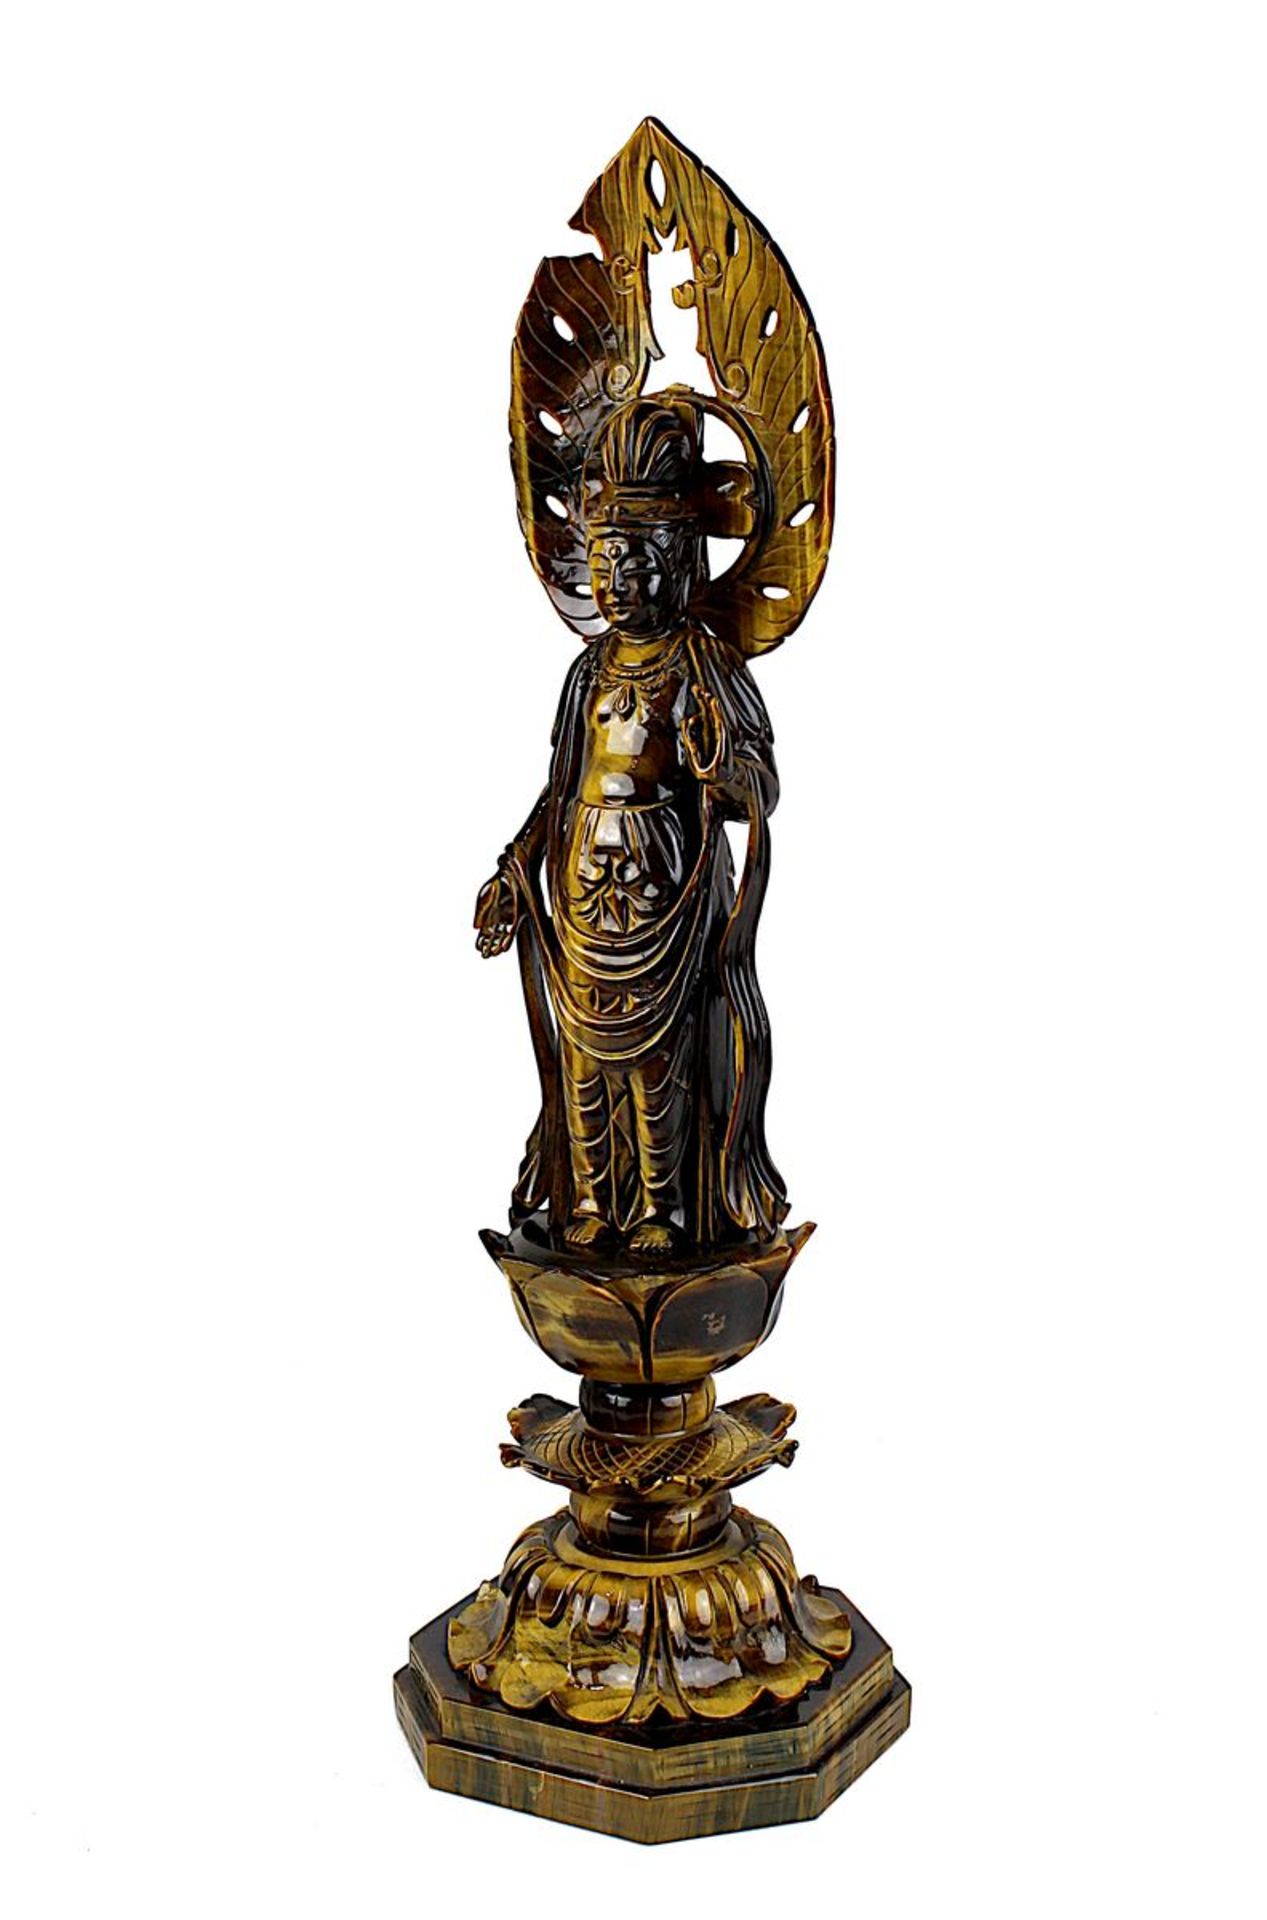 Guanyin-Buddhafigur, Tiegerauge, Südost-Asien, 1. Hälfte 20. Jh., fein geschnitzte Figur aus